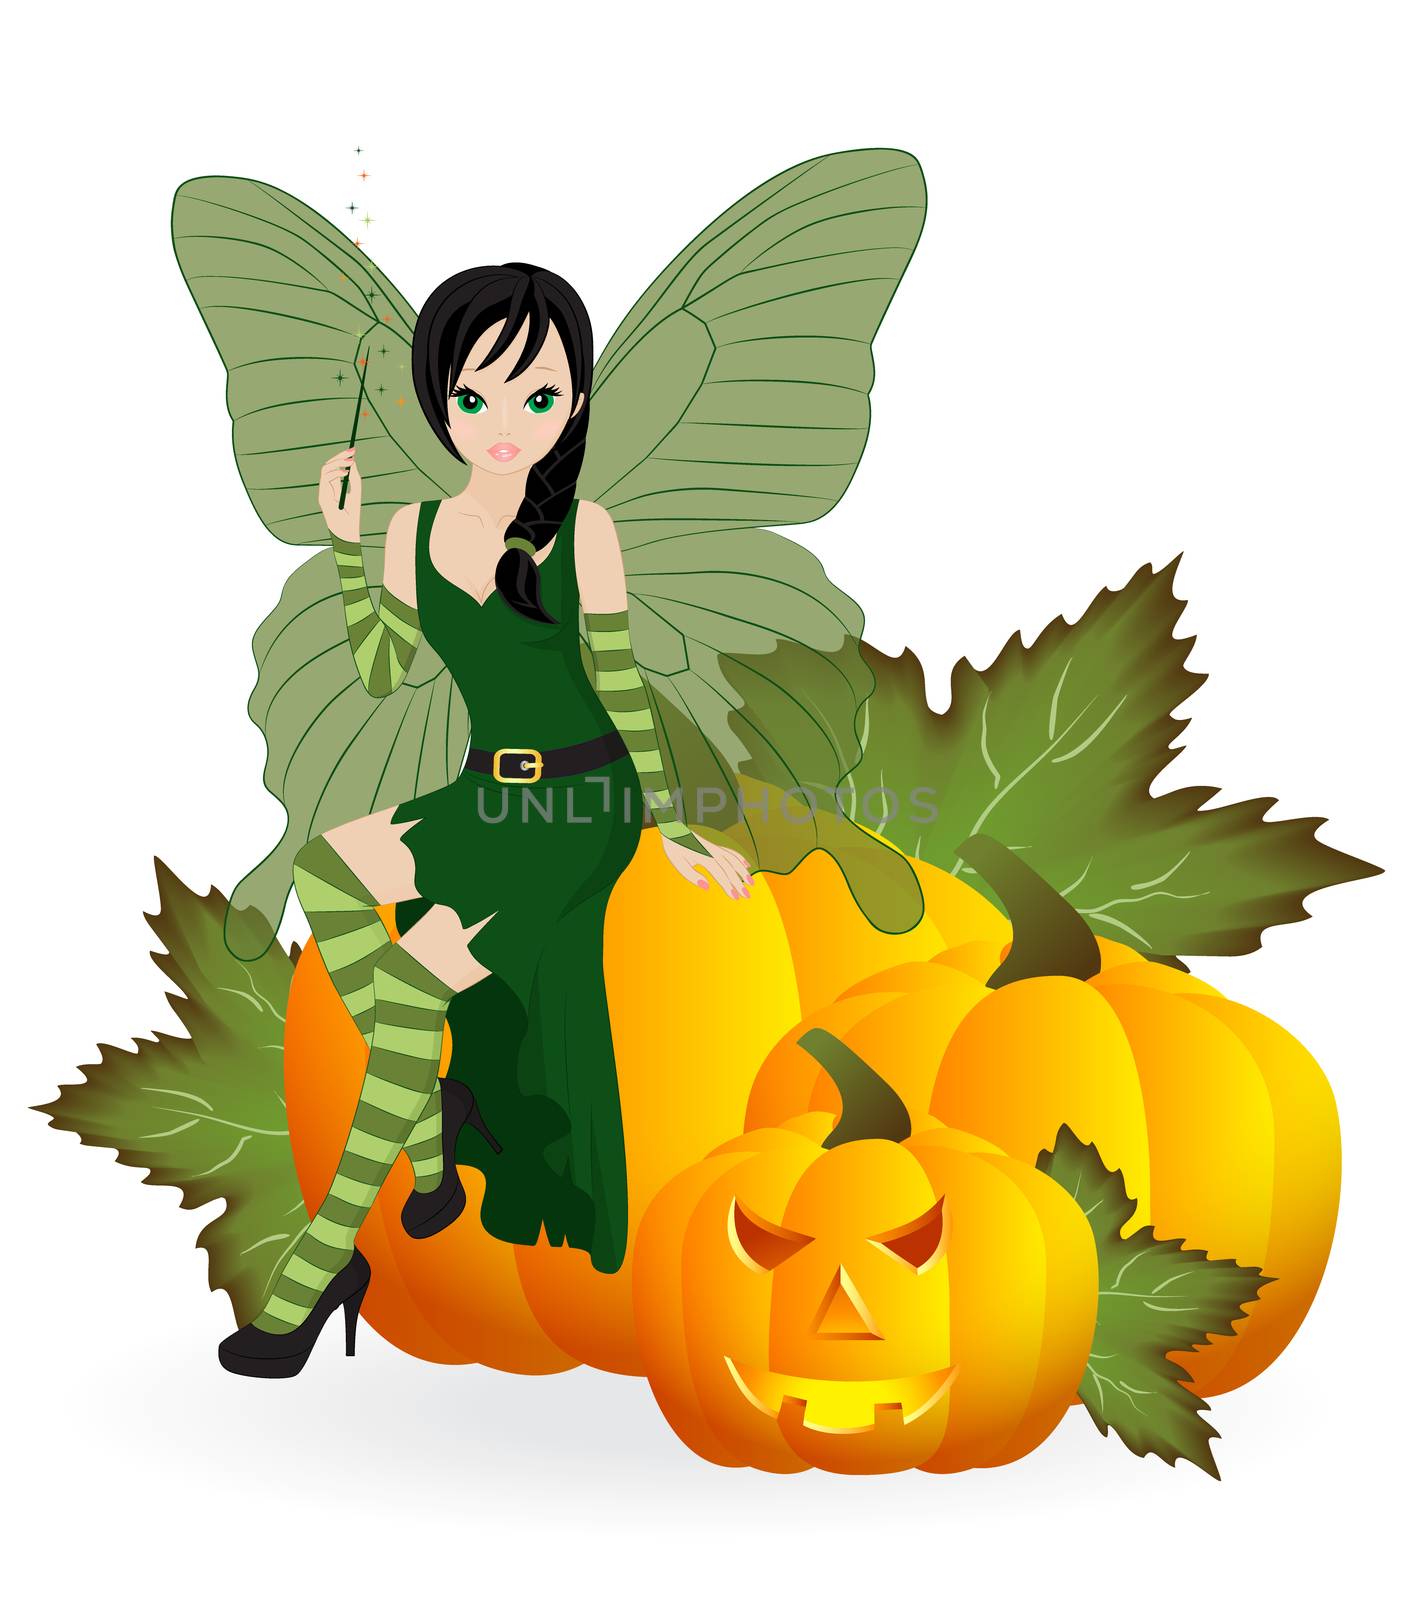 Fairy on a pumpkin by rodakm